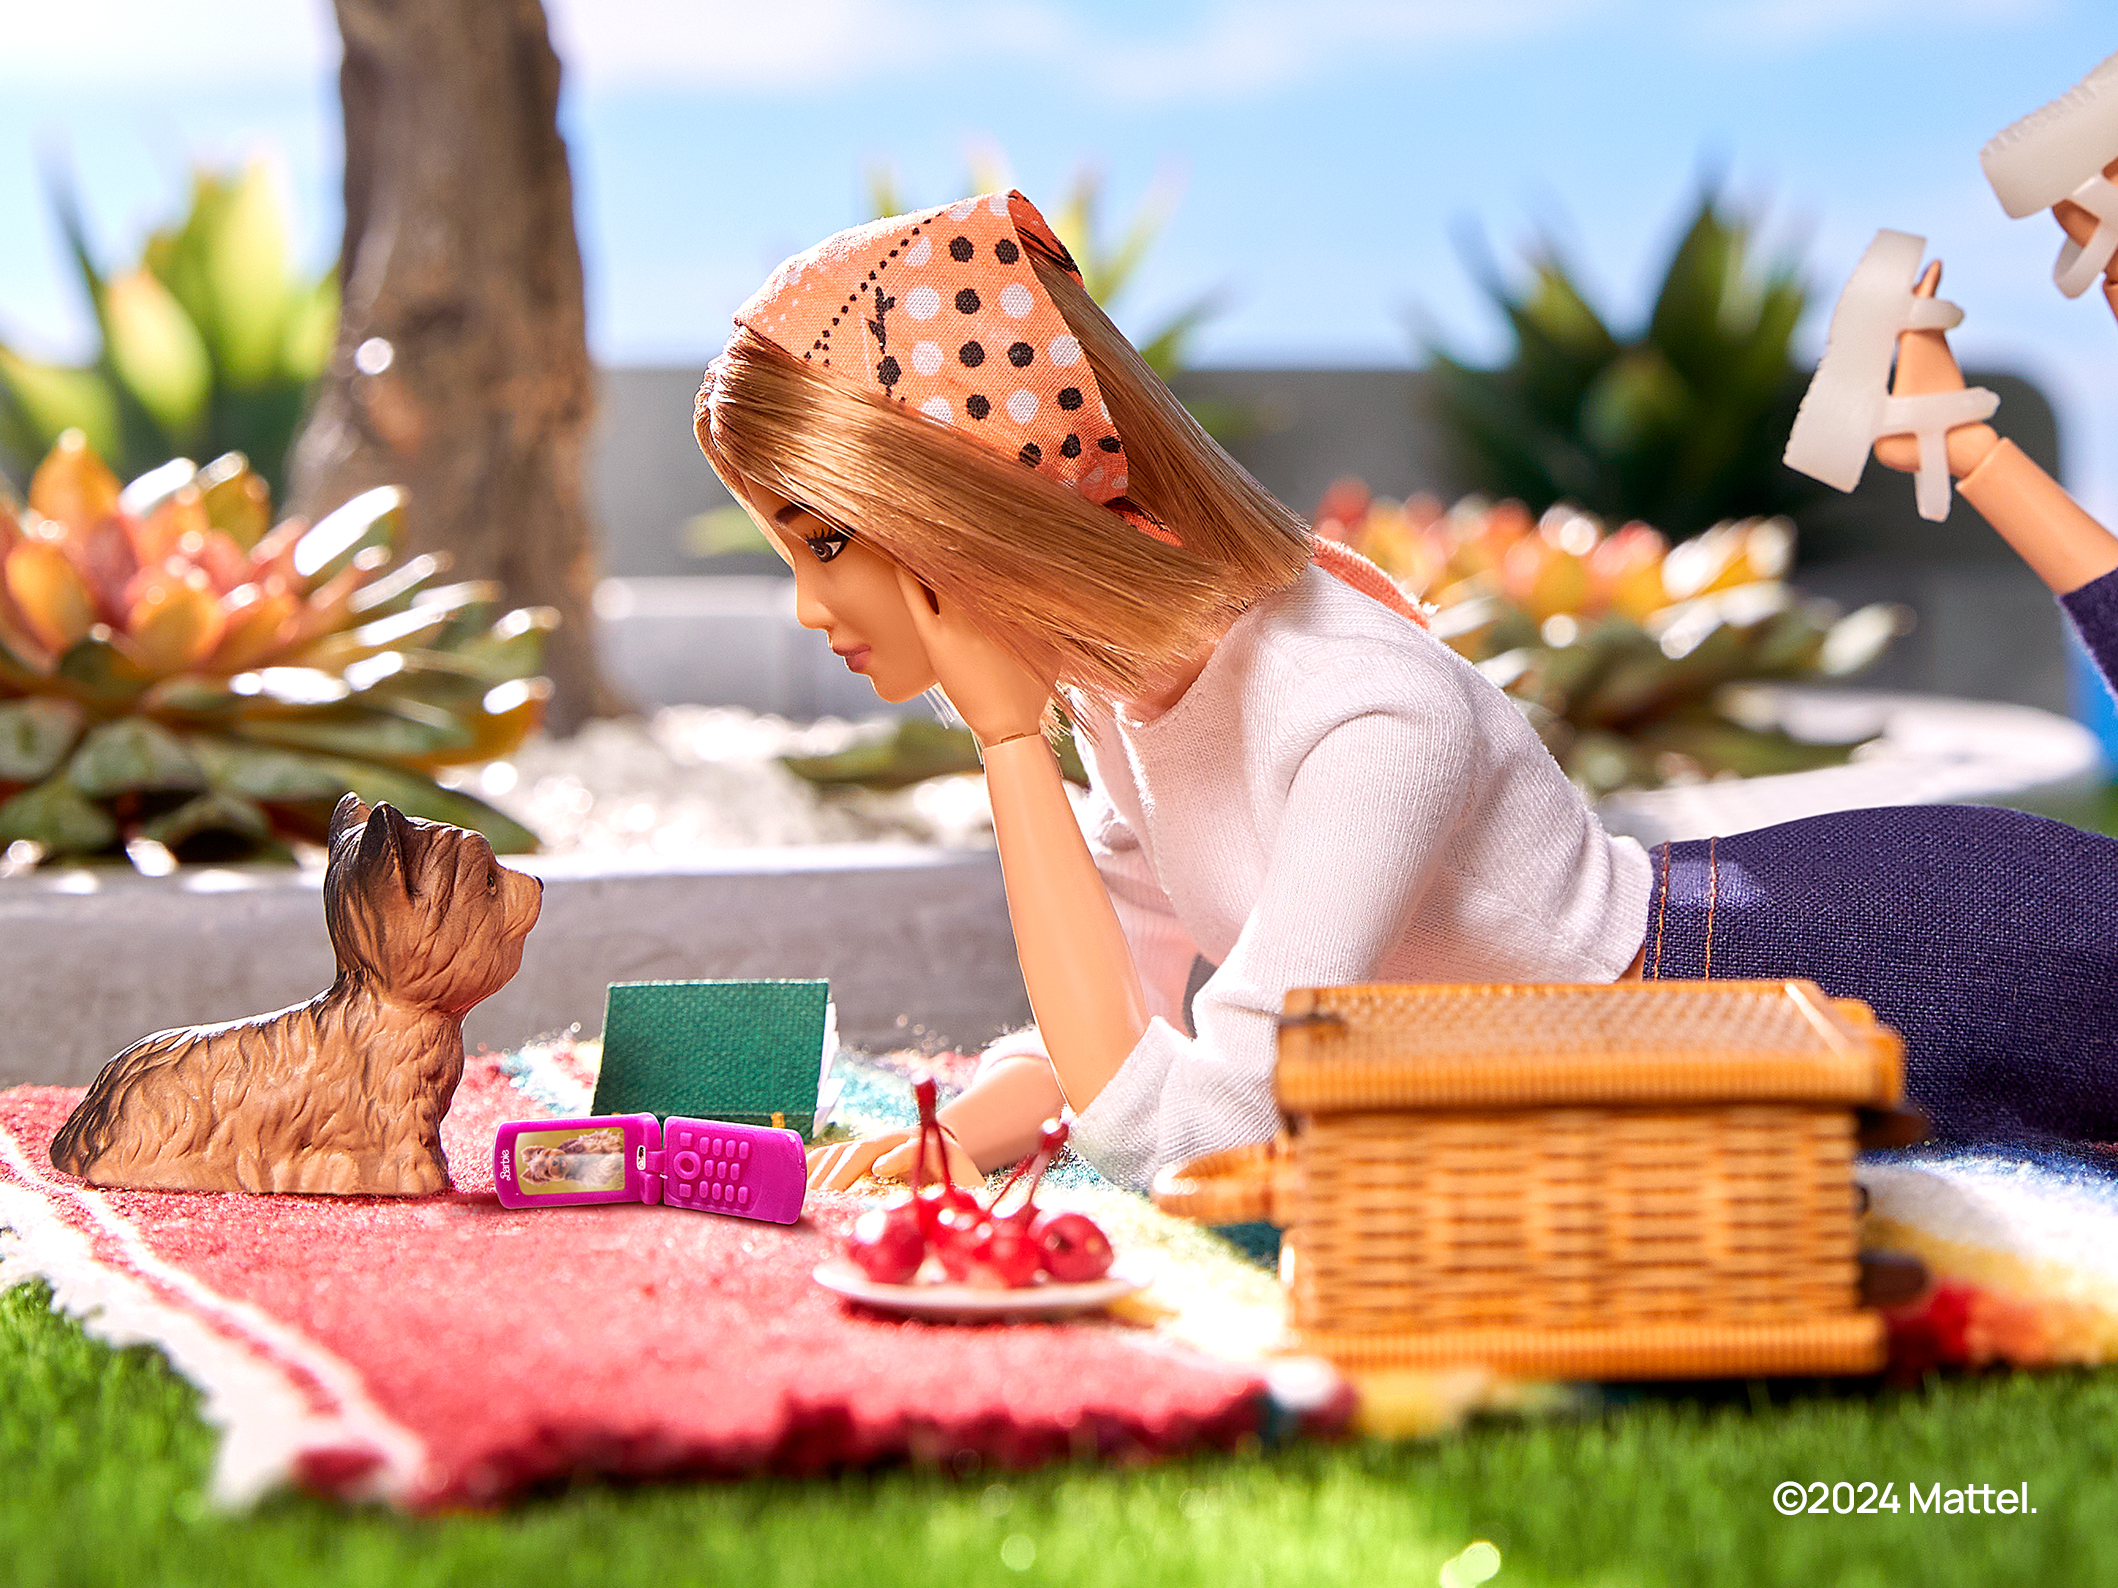 HMD förbereder en "clamshell" i Barbie-stil och en modulär smartphone som kan repareras hemma